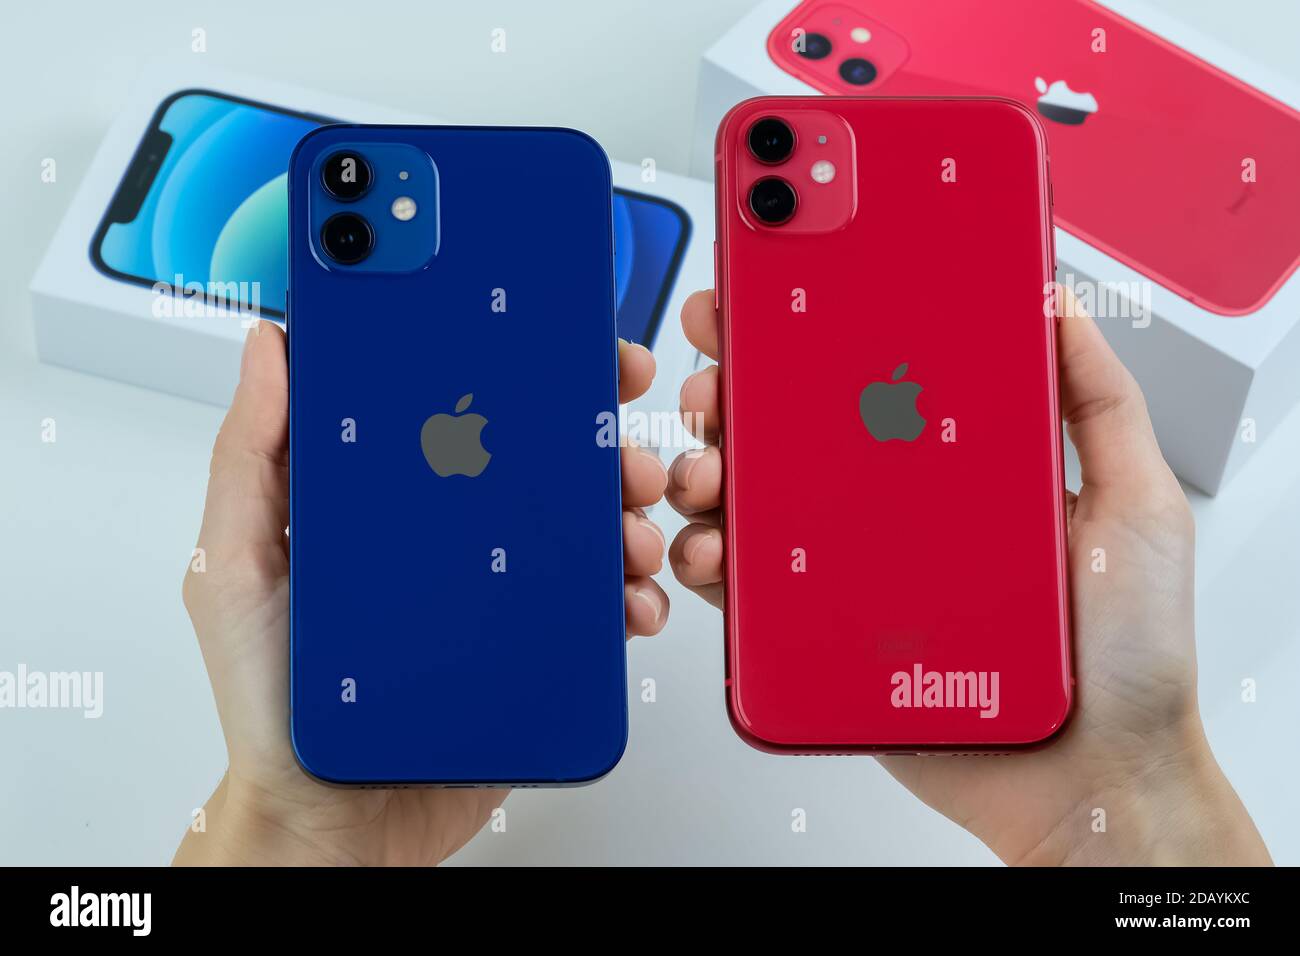 IPhone 12 in blu e iPhone 11 in rosso affiancati Foto stock - Alamy